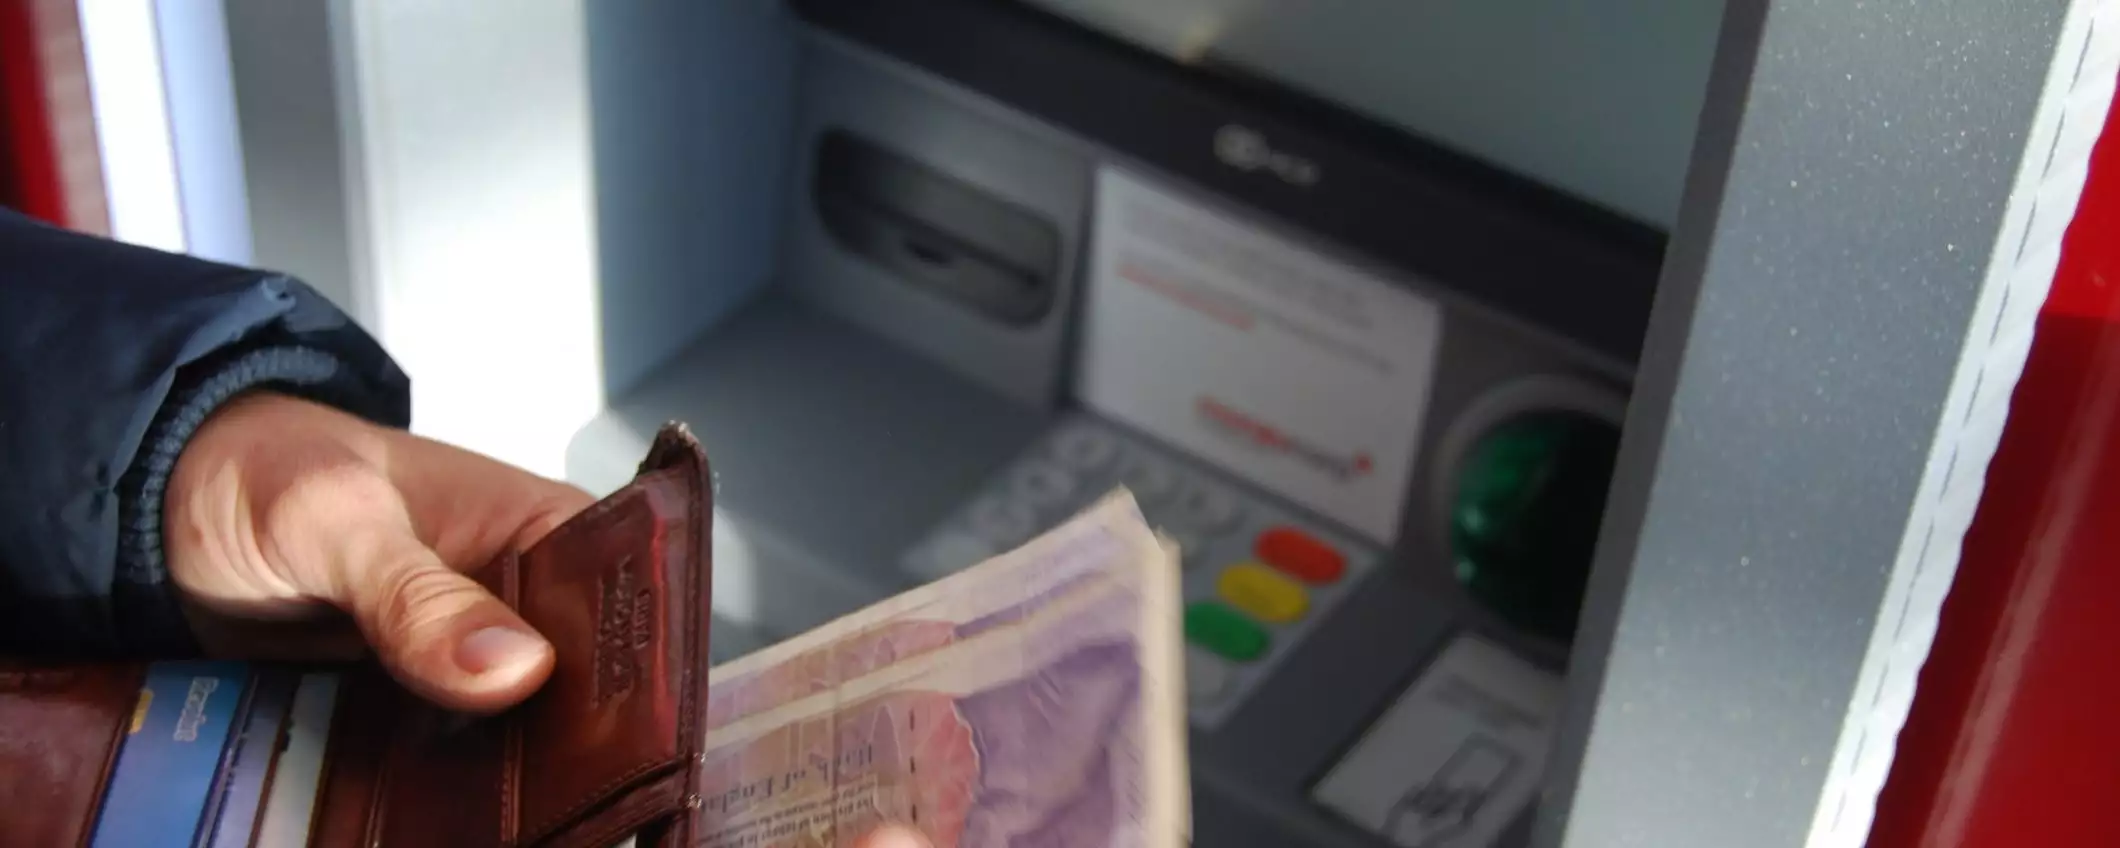 Prelievi ATM e conti online: quale servizio scegliere?